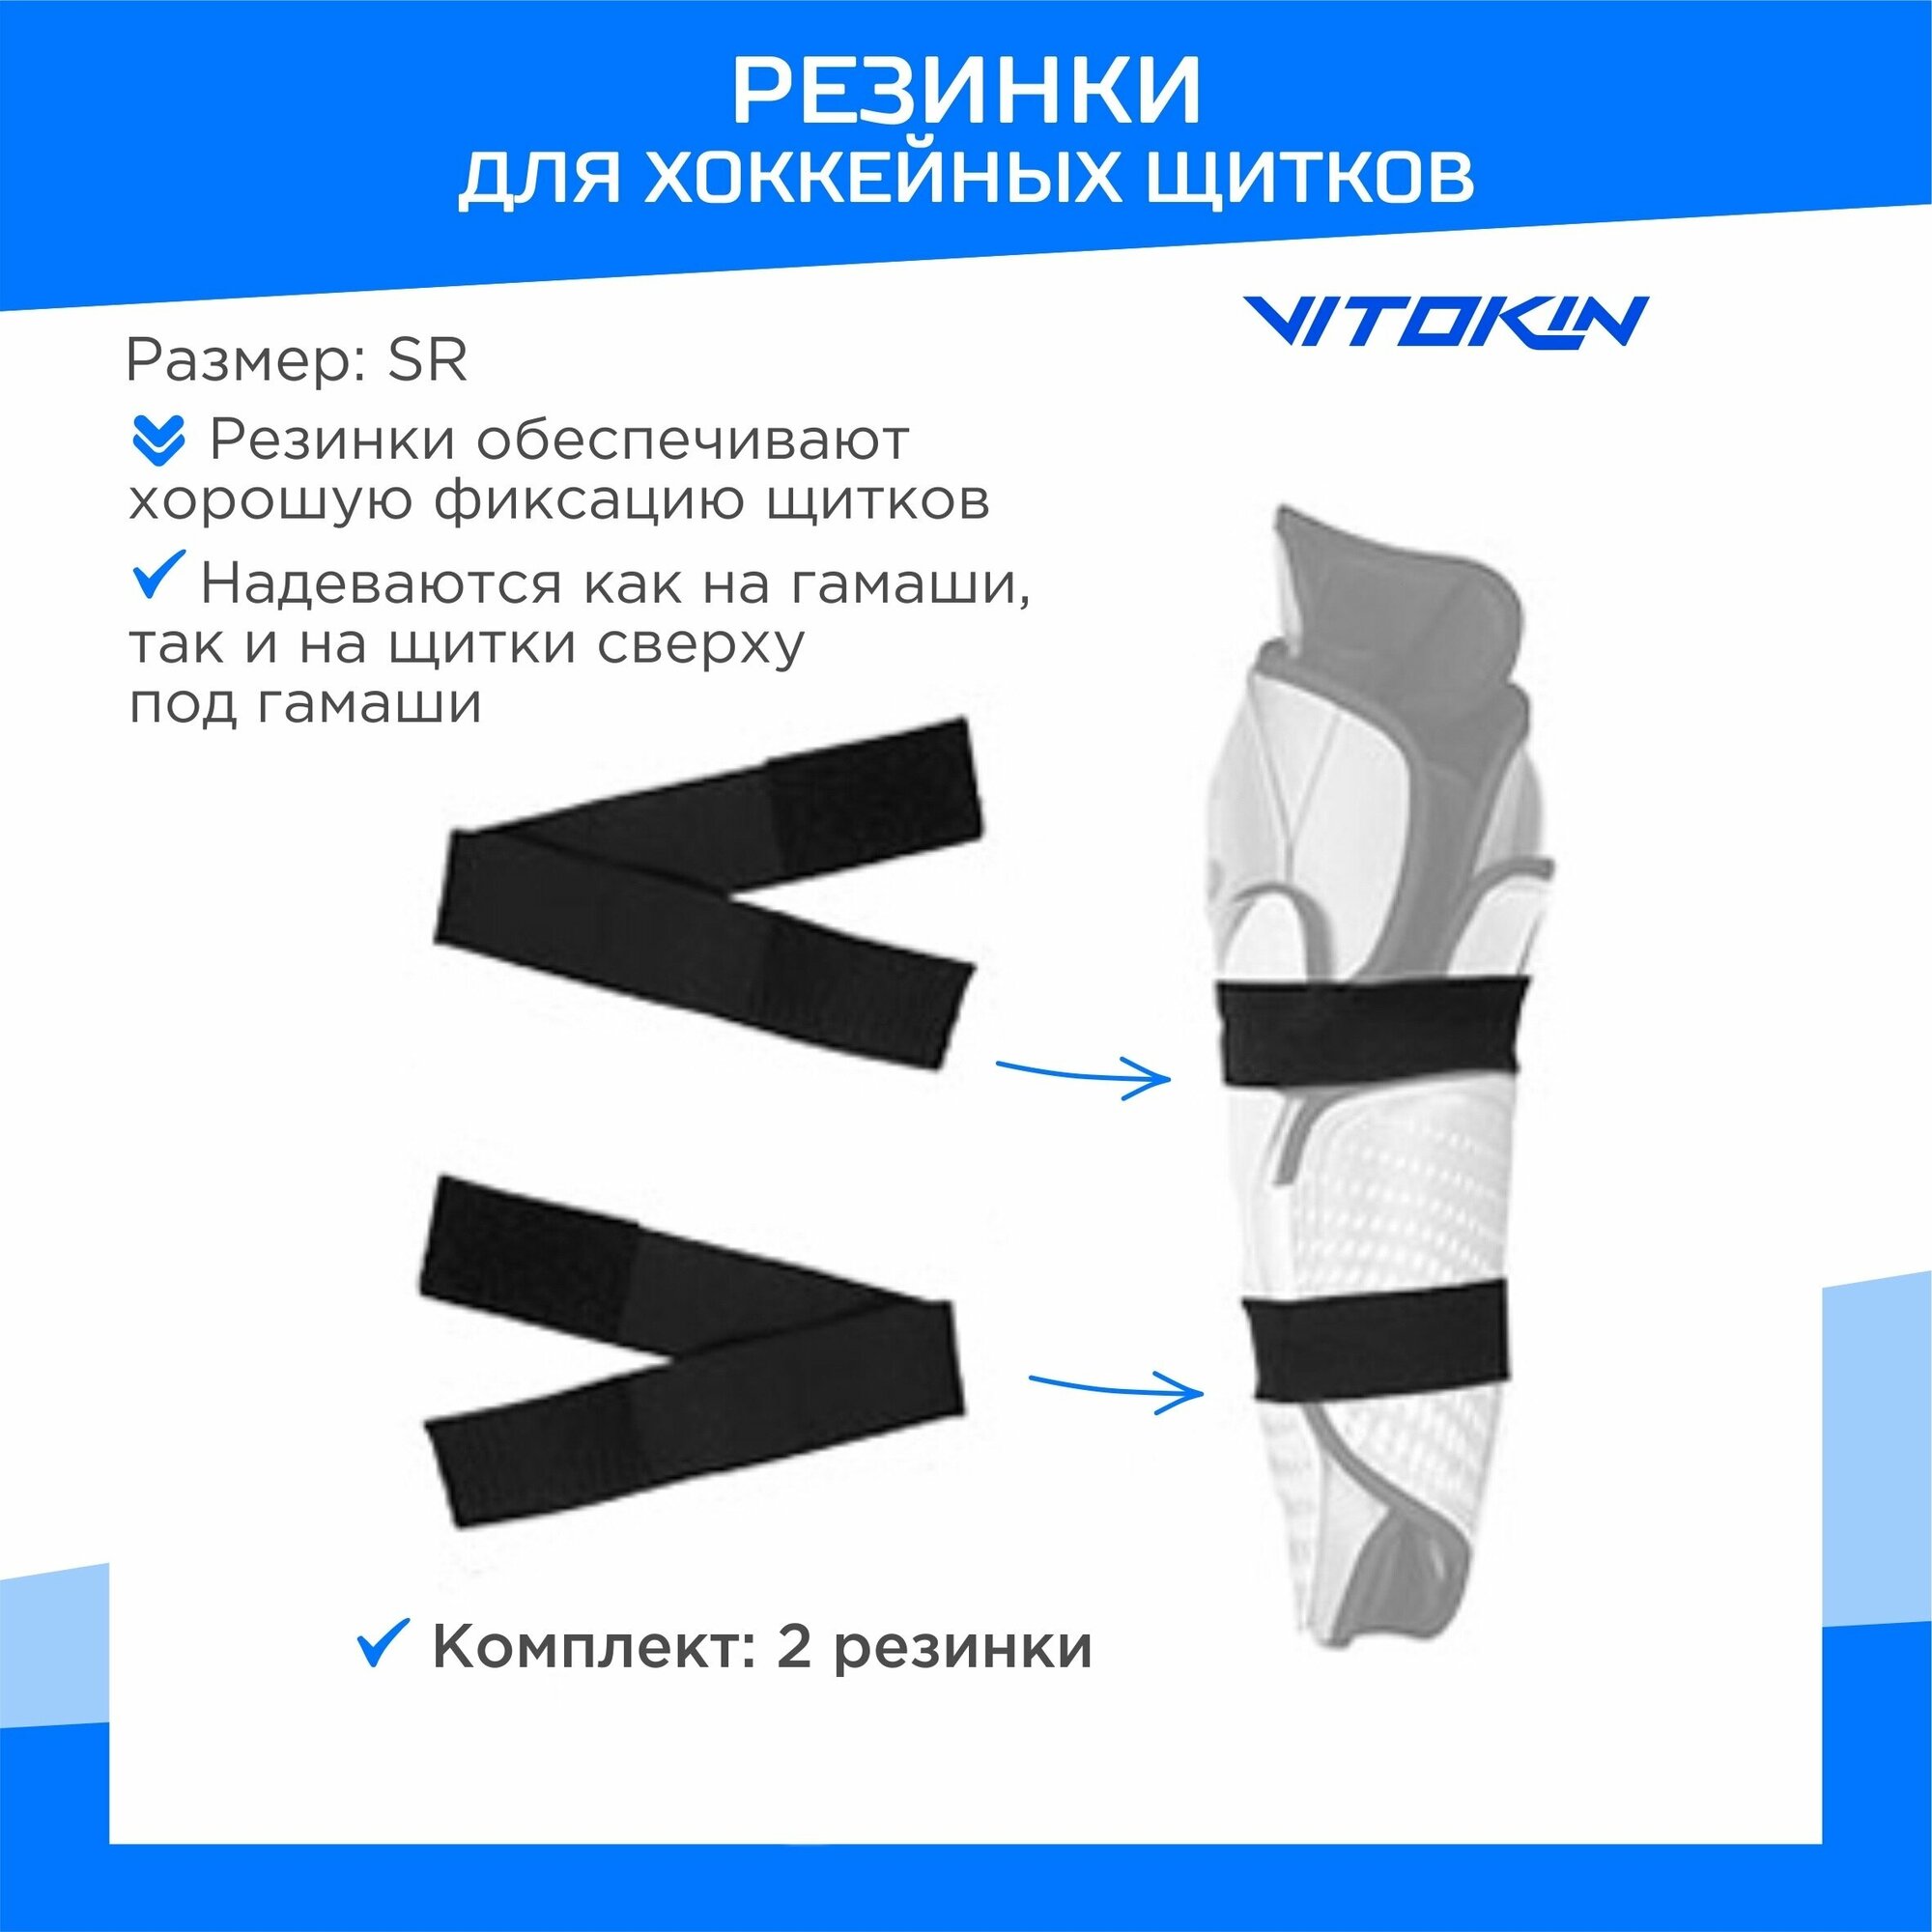 Резинки для хоккейных щитков VITOKIN, размер SR, цвет черный